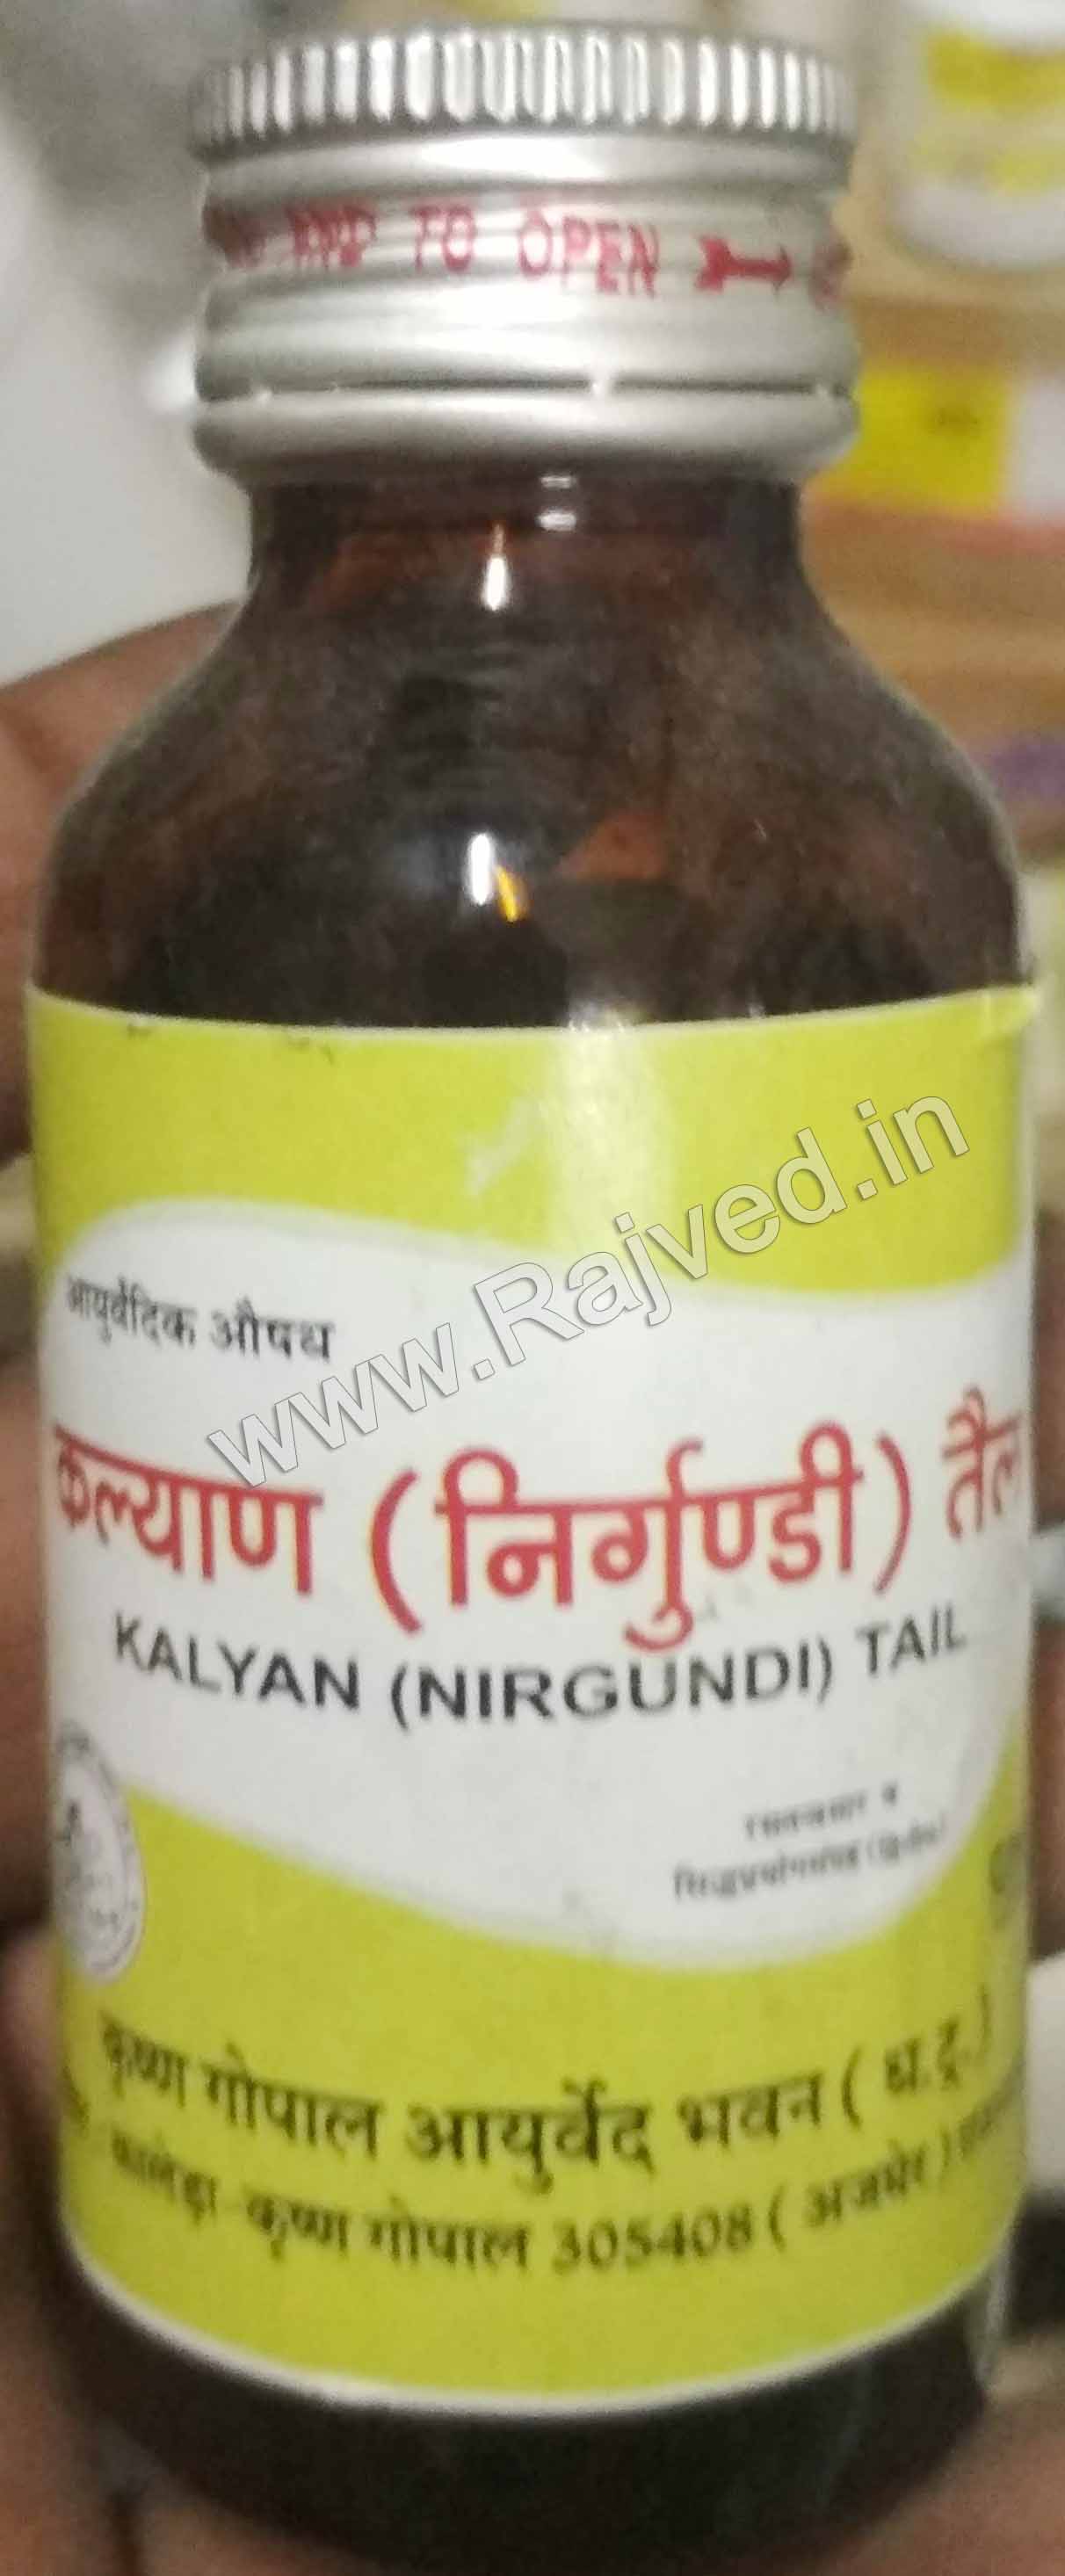 kalyan nirgundi tail 50 ml krishna gopal ayurved bhavan